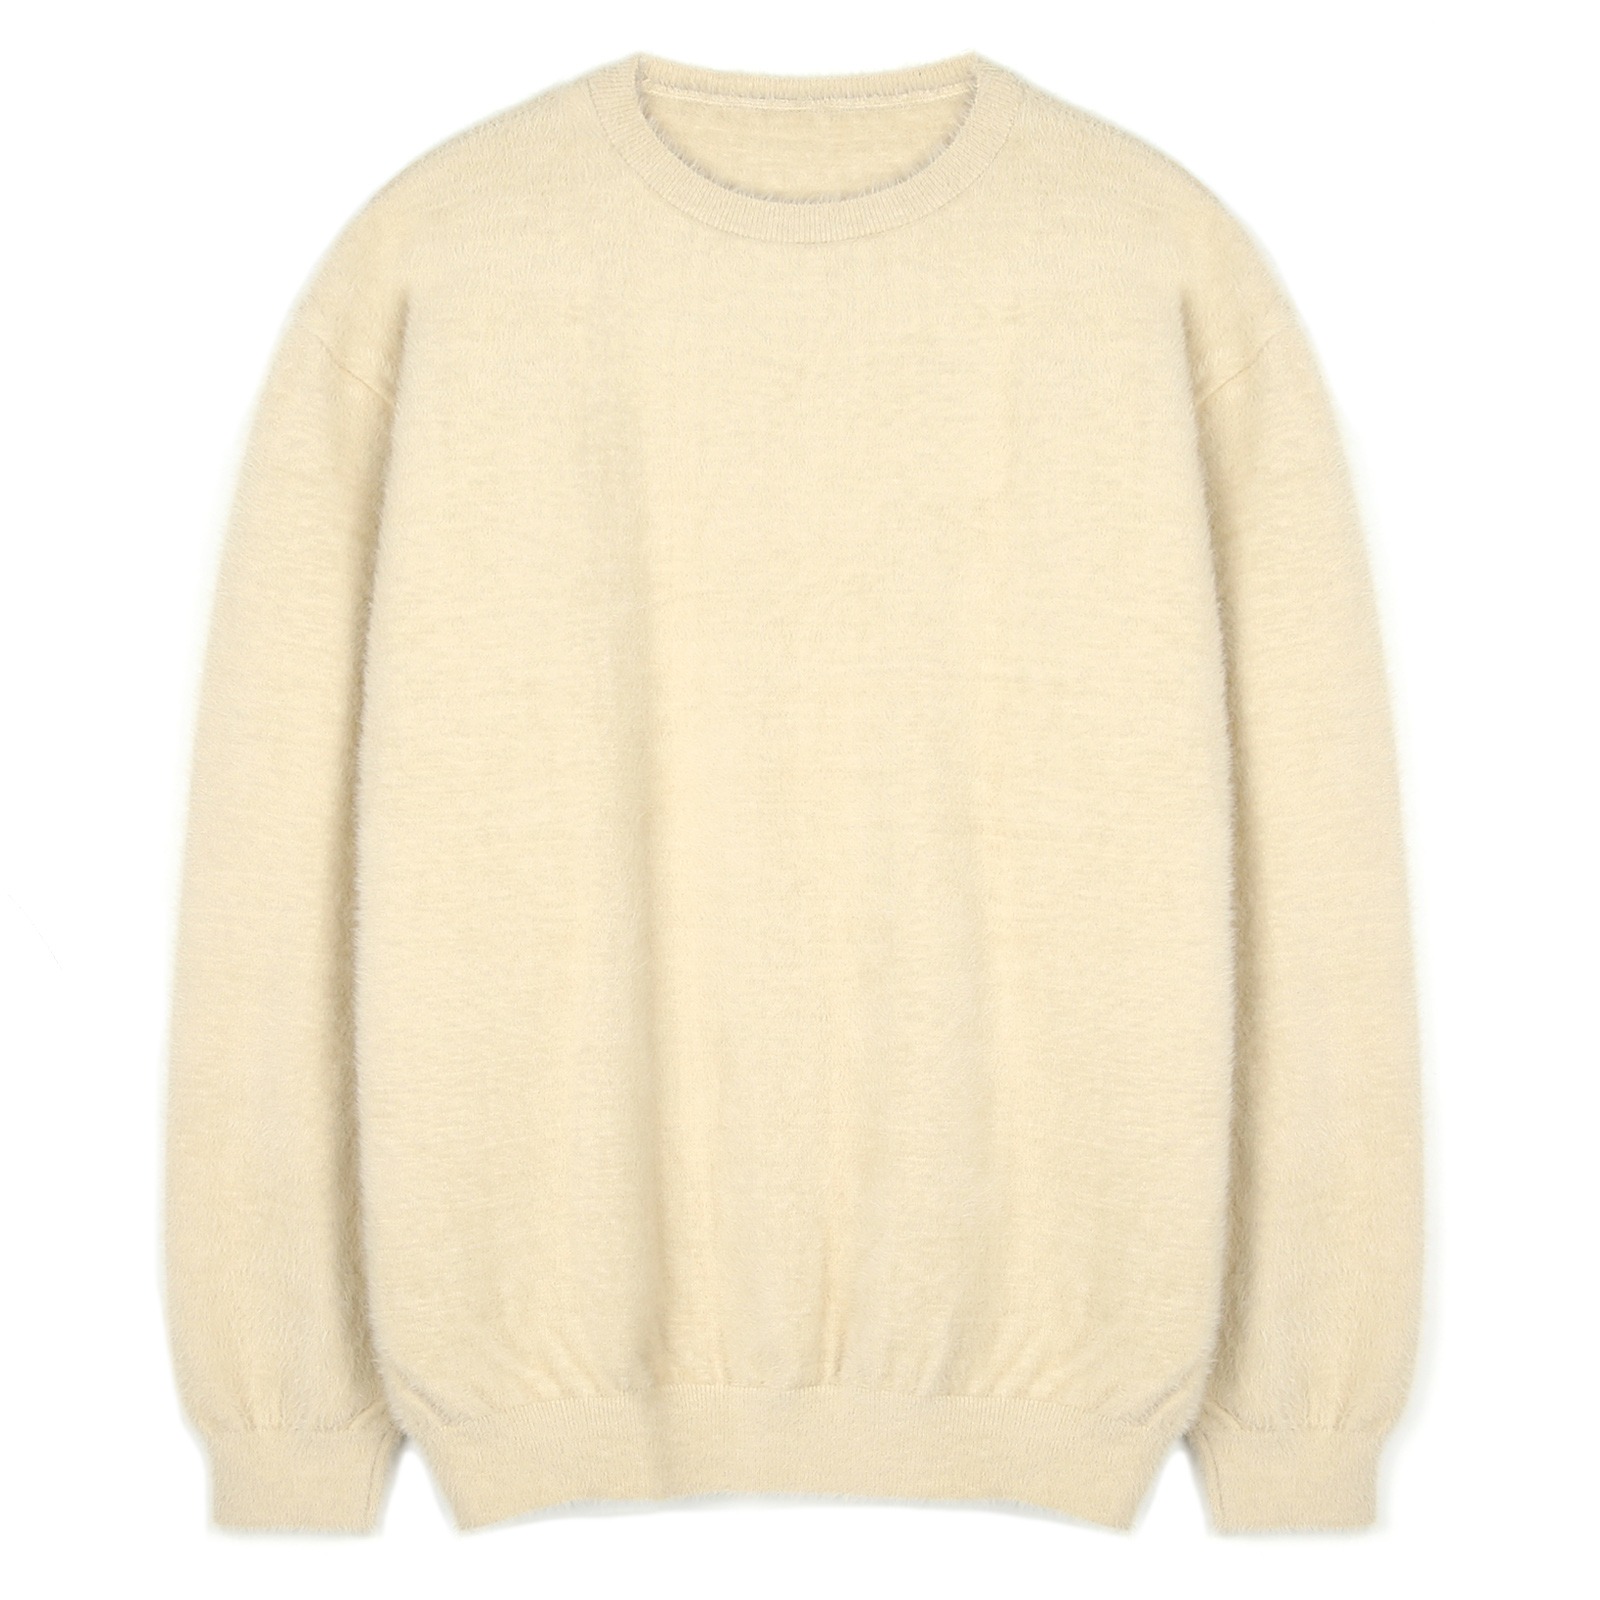 V172 soft fur round knit (light beige)